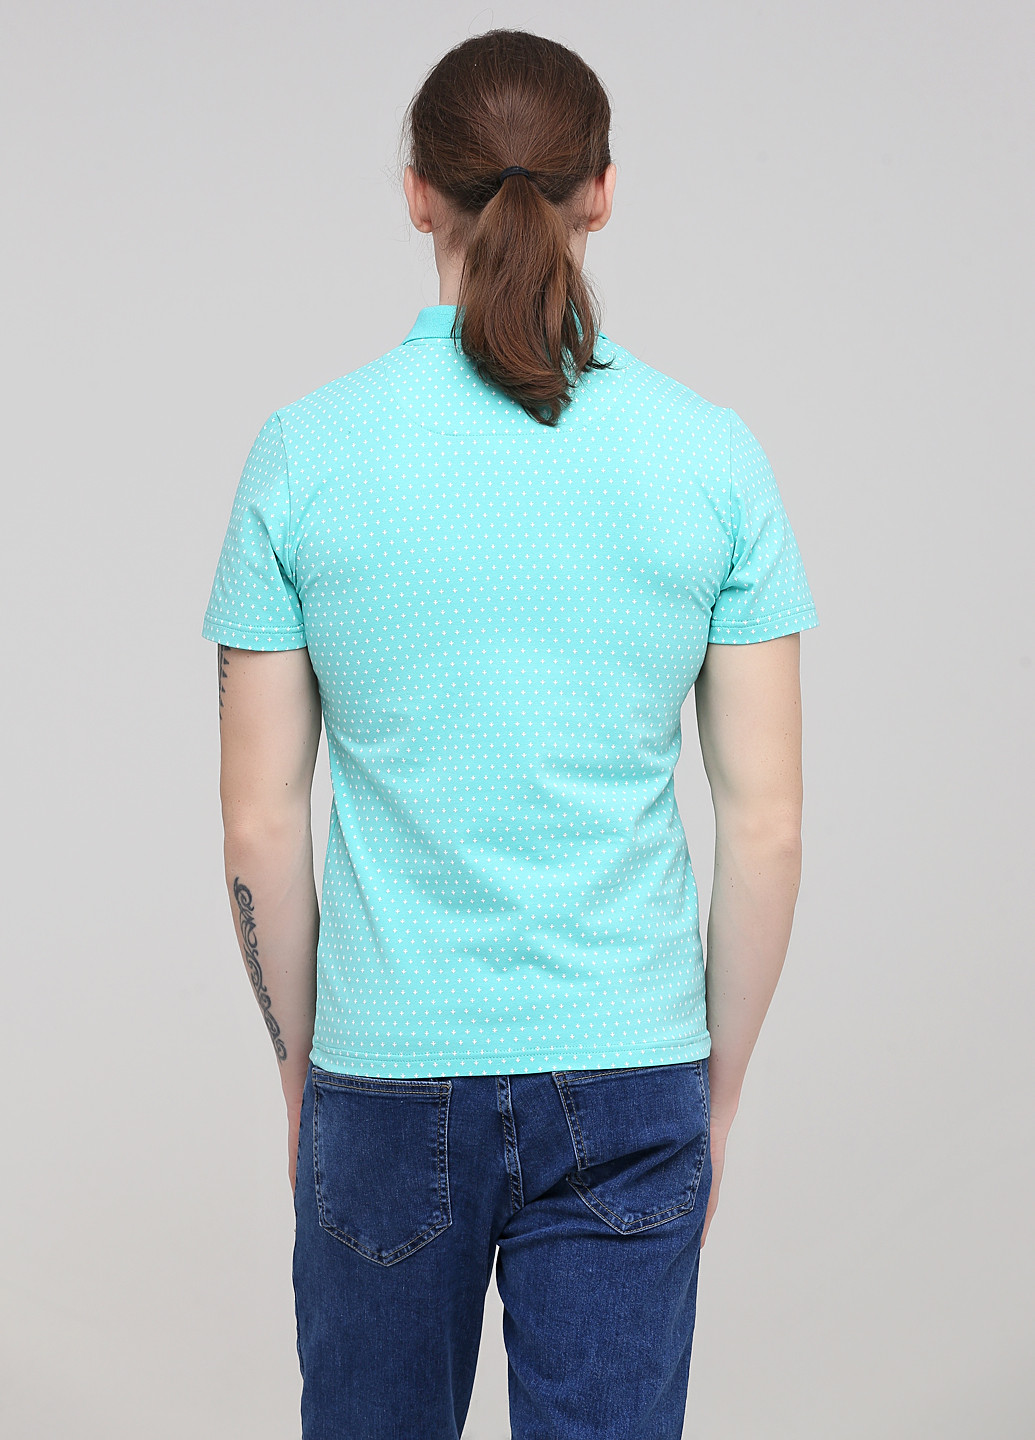 Светло-бирюзовая футболка-поло для мужчин Melgo с геометрическим узором